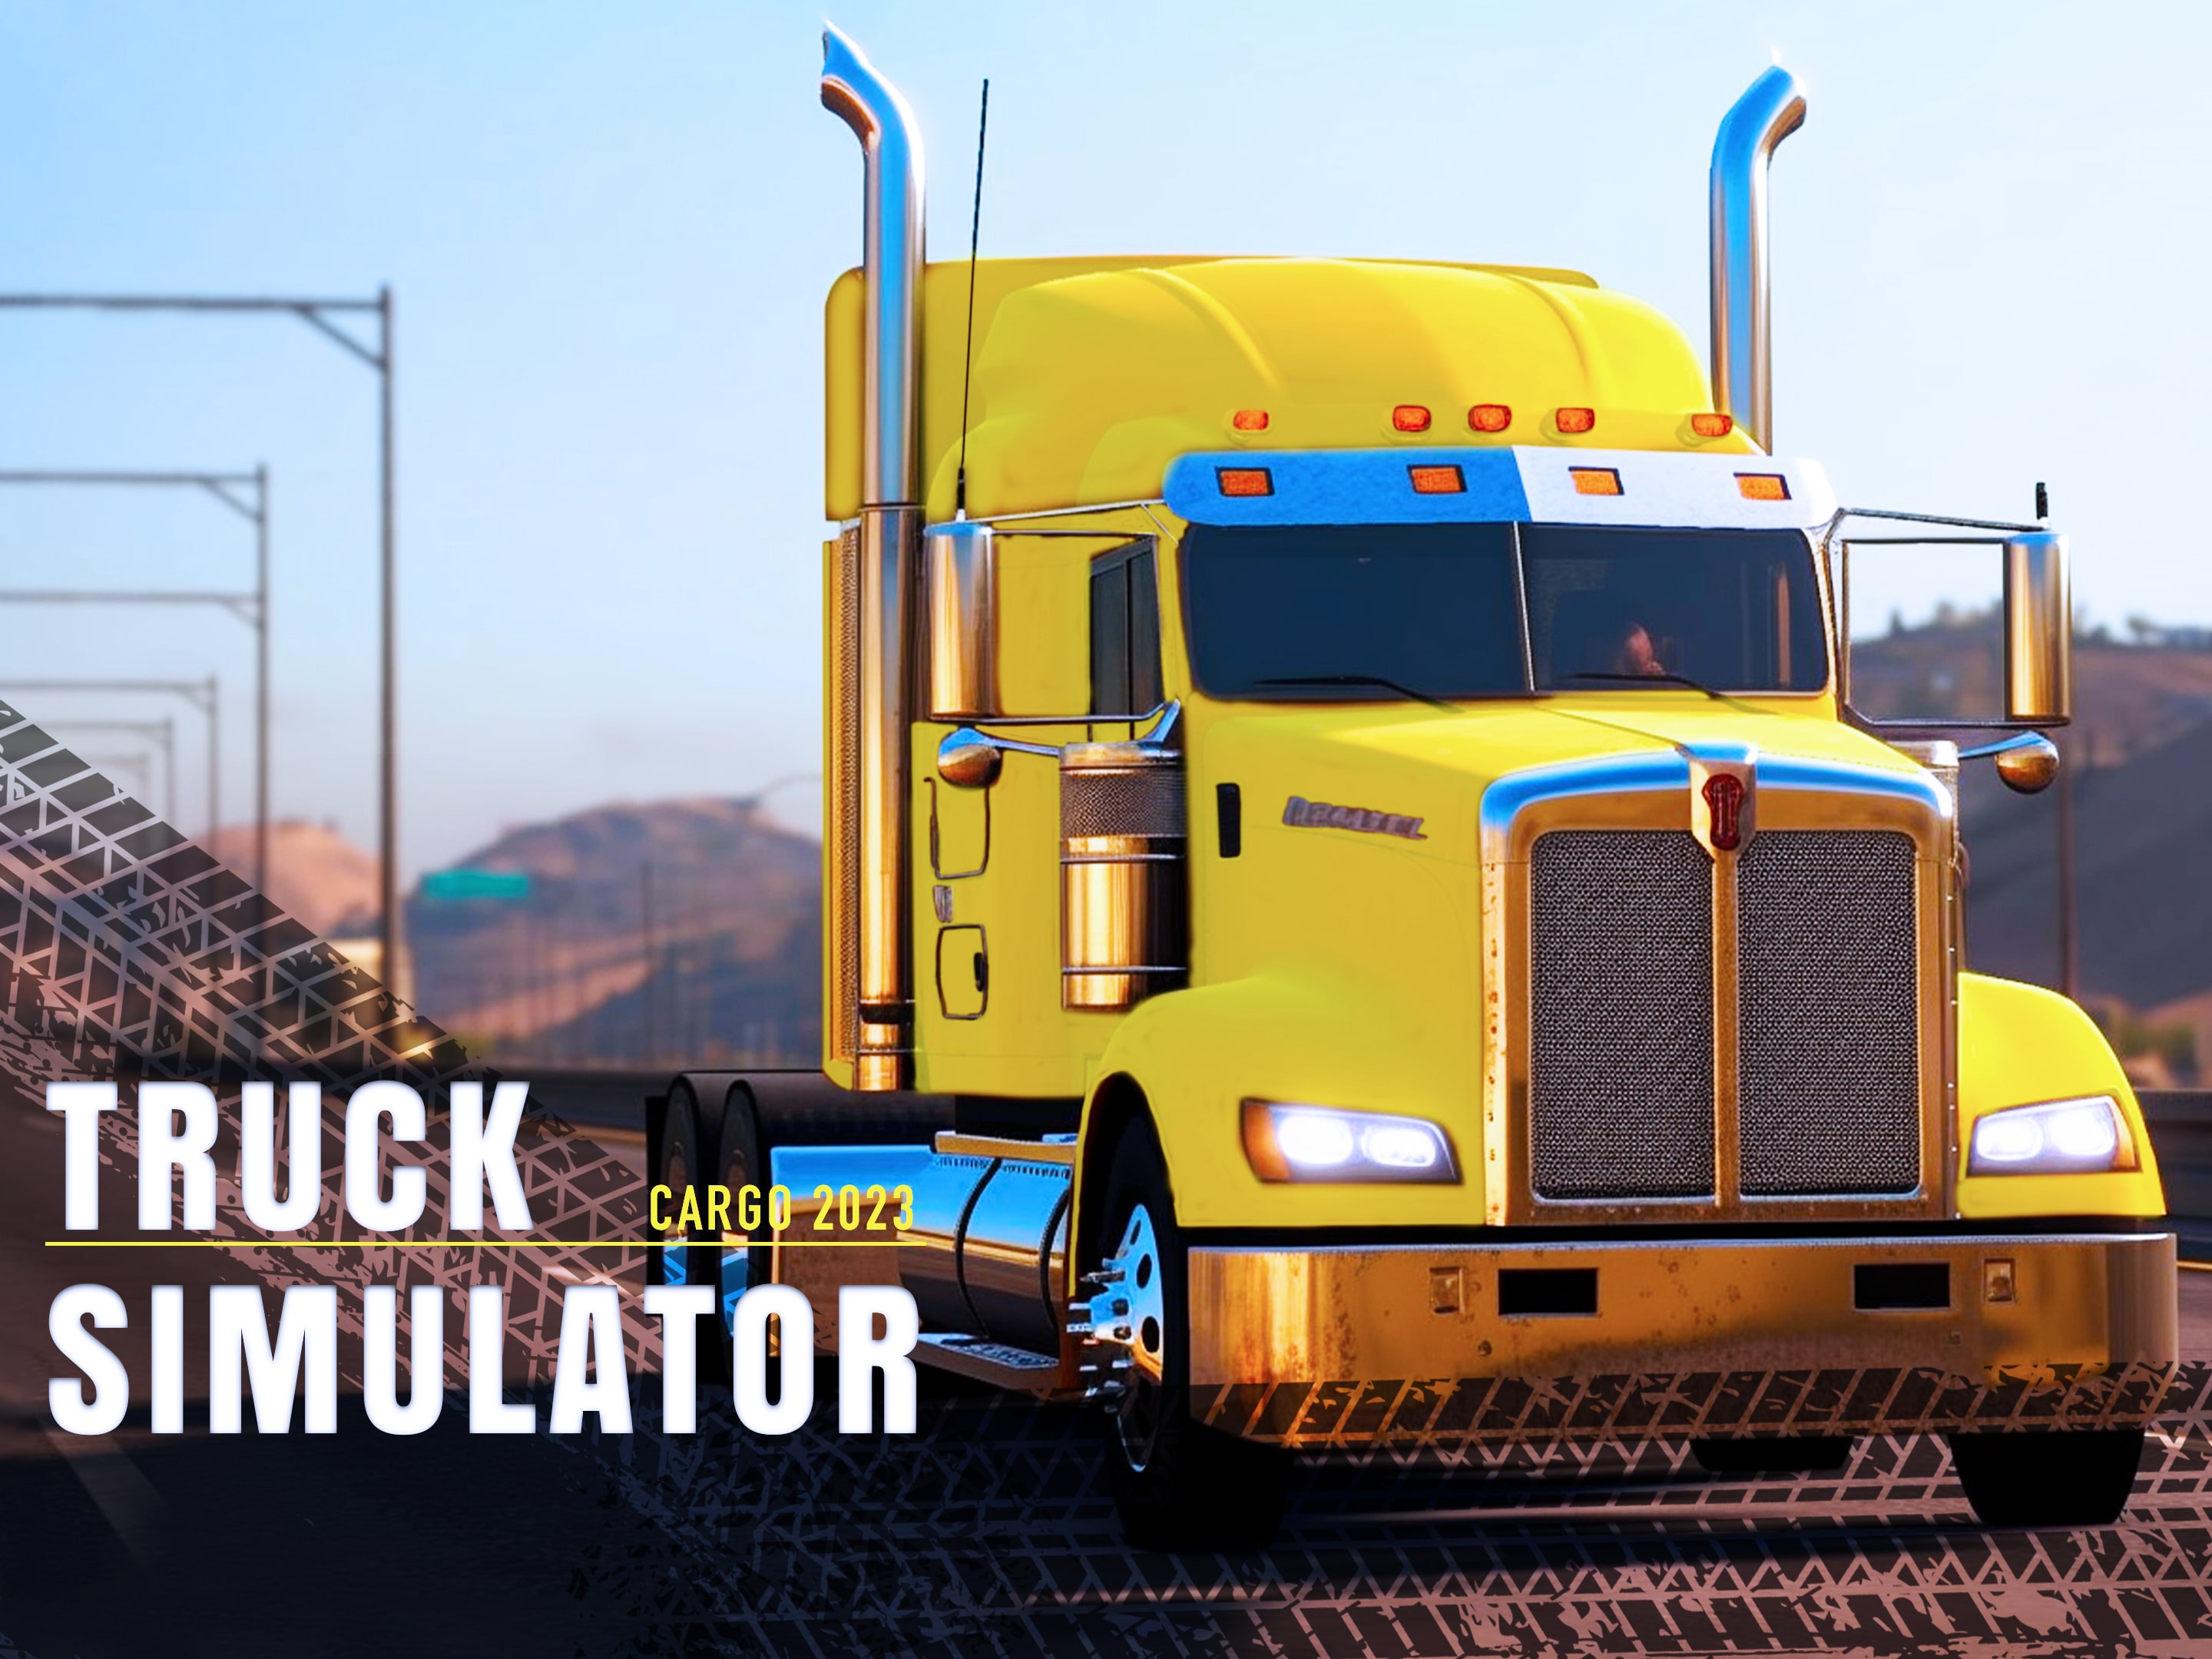 5 melhores jogos de simulador de caminhão para PS4